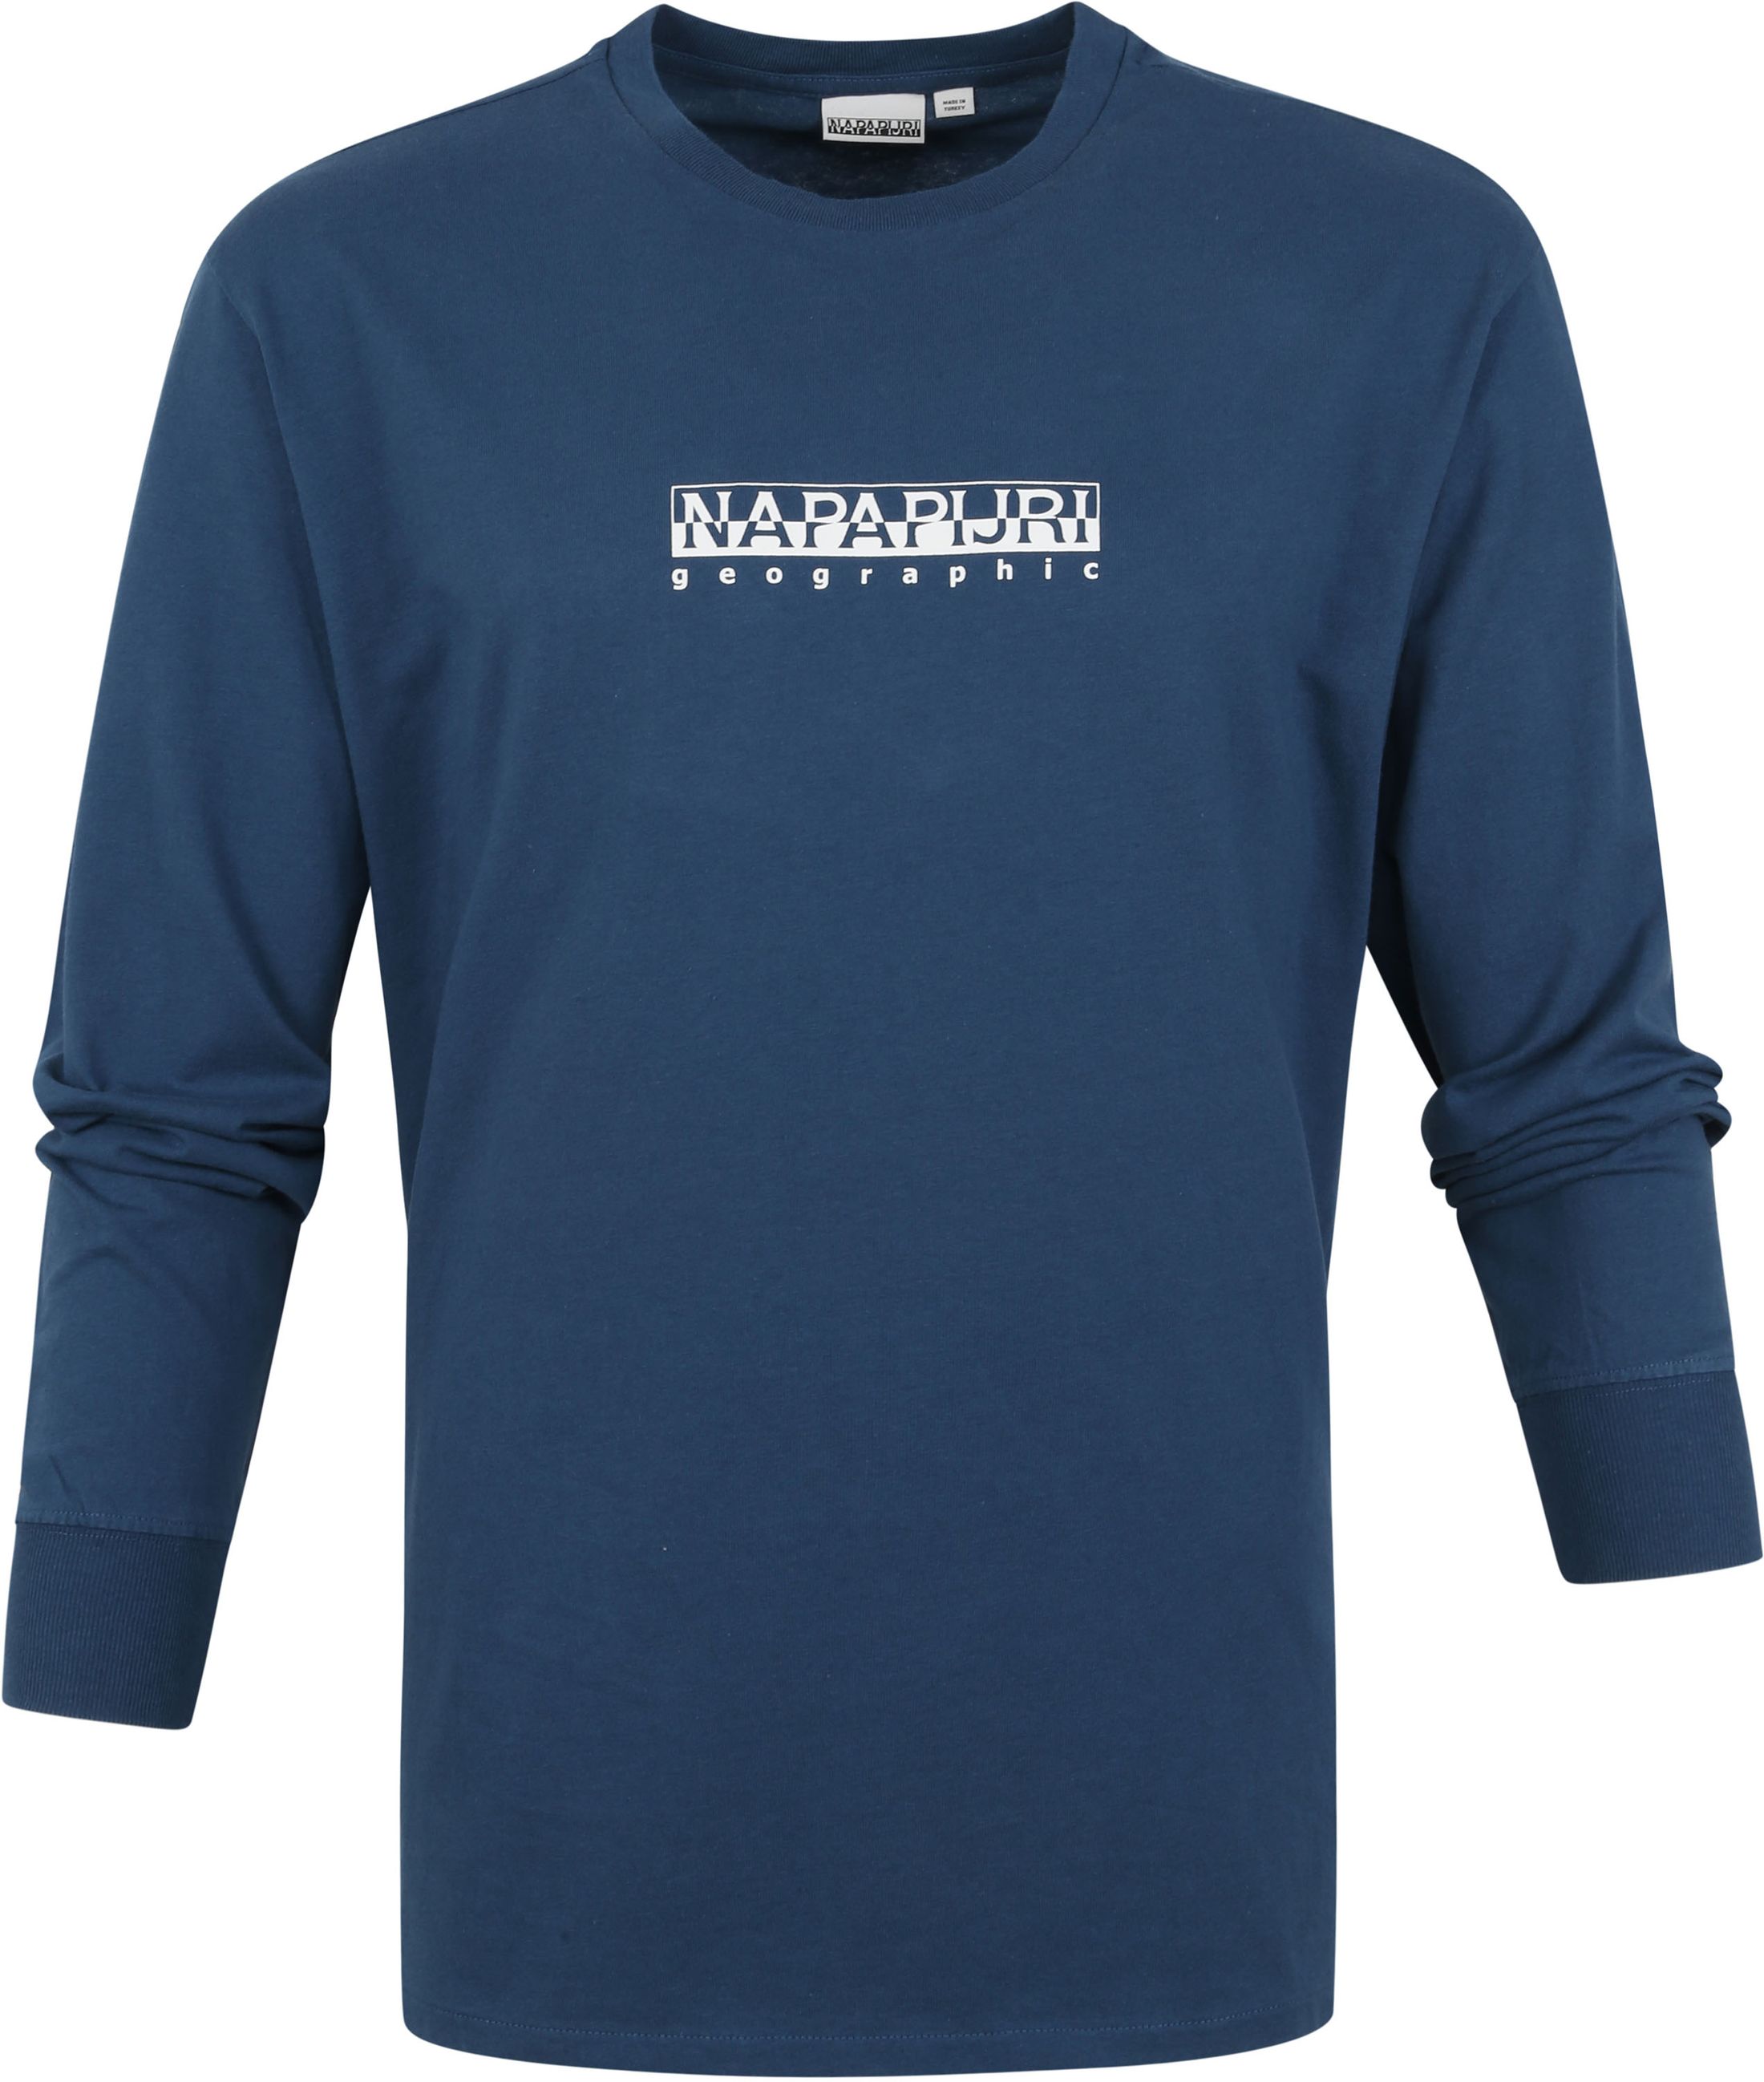 Napapijri S-Box Longsleeve T Shirt Blue size L